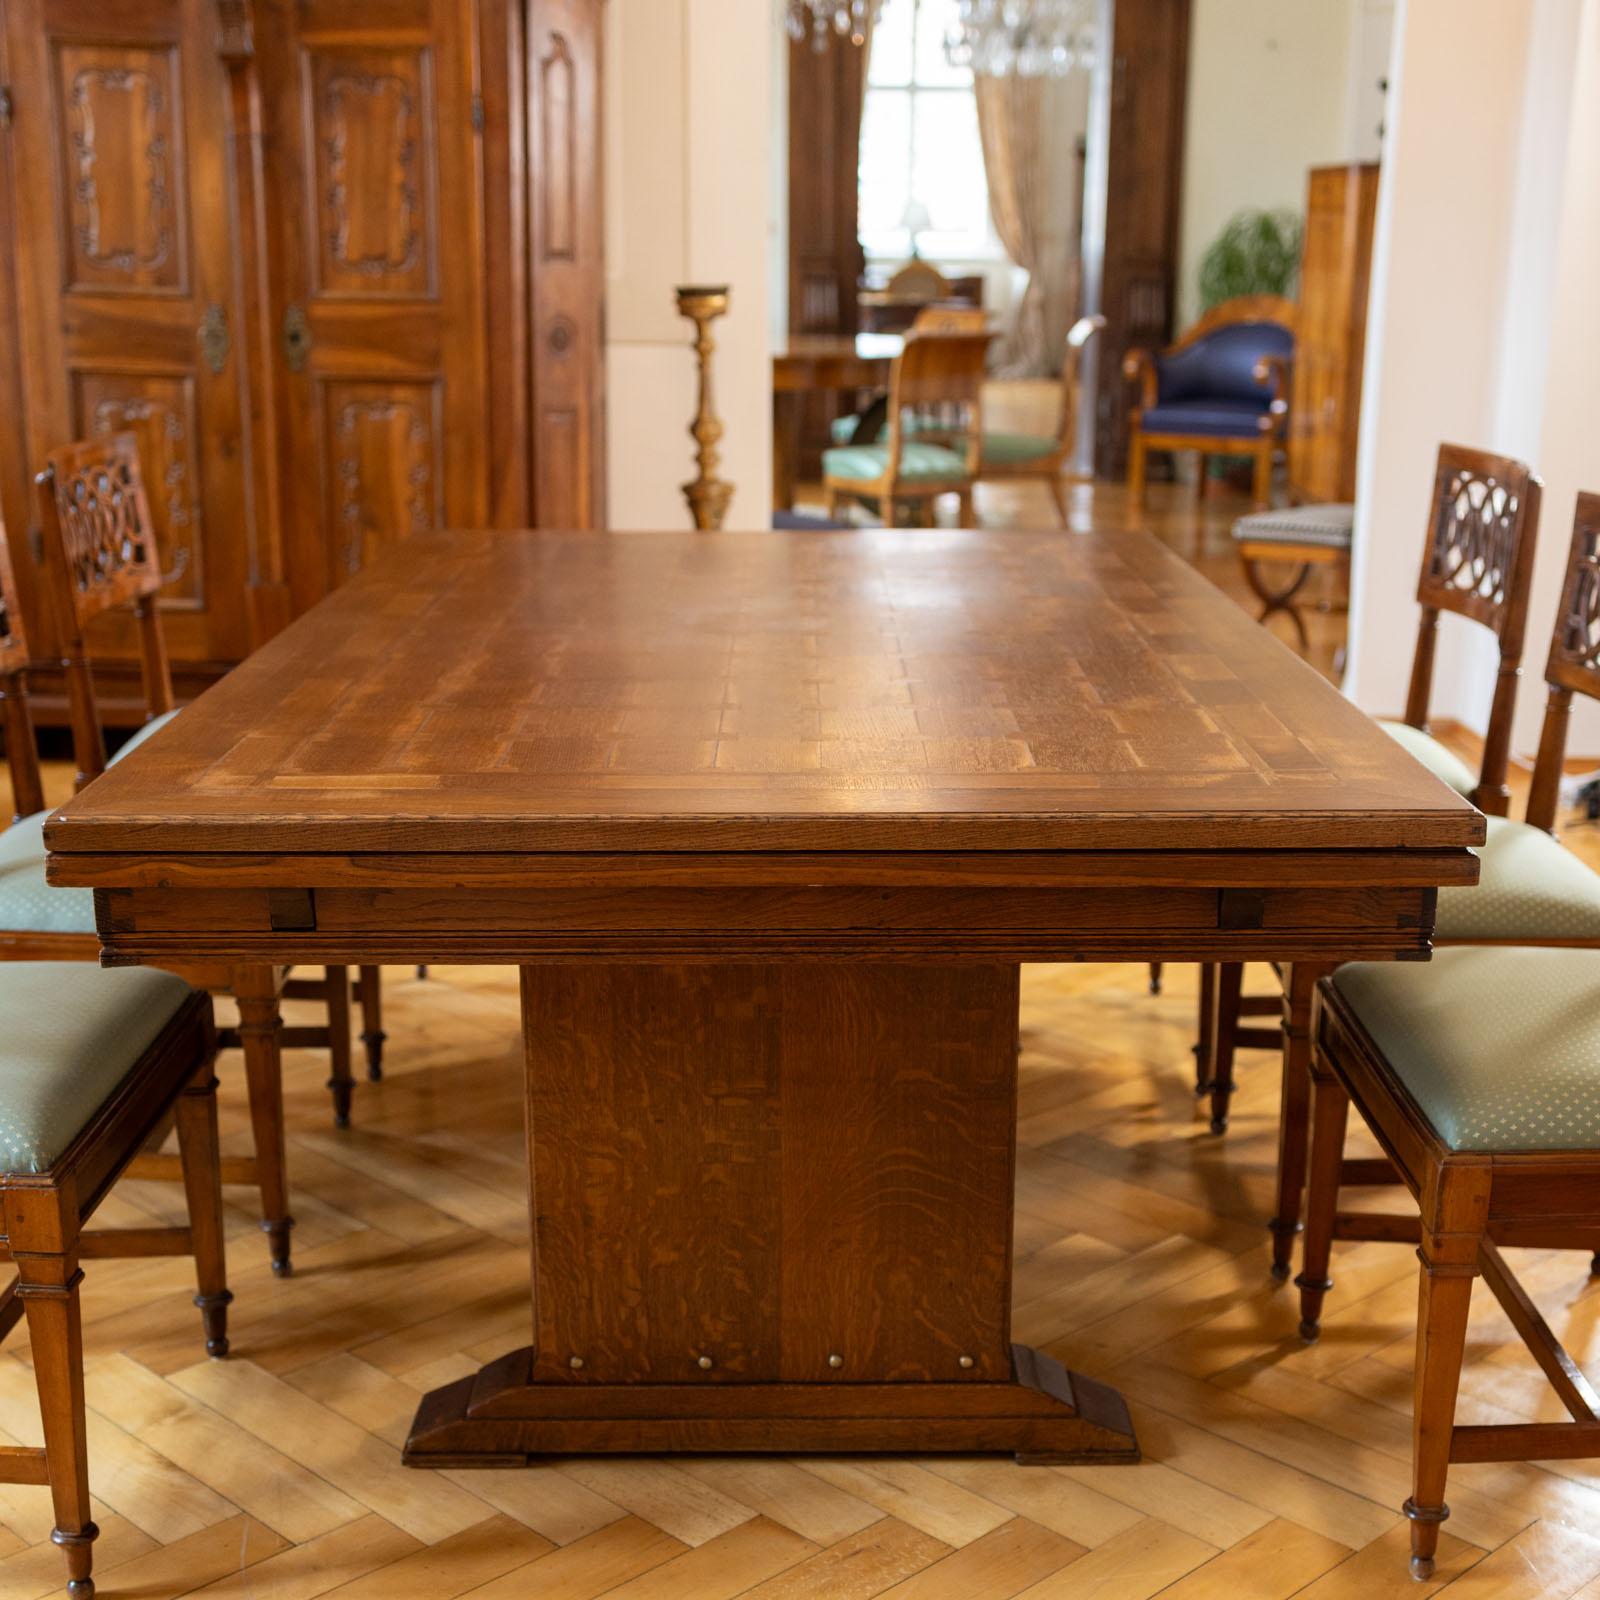 Großer Jugendstil-Ausziehtisch aus Eichenholz mit einer rechteckigen Tischplatte und zwei Auszugsflächen an den Schmalseiten. Die Tischplatten weisen ein schönes Parkettmuster auf. Die maximale Länge beträgt 360 cm. Der Tisch ruht auf zwei